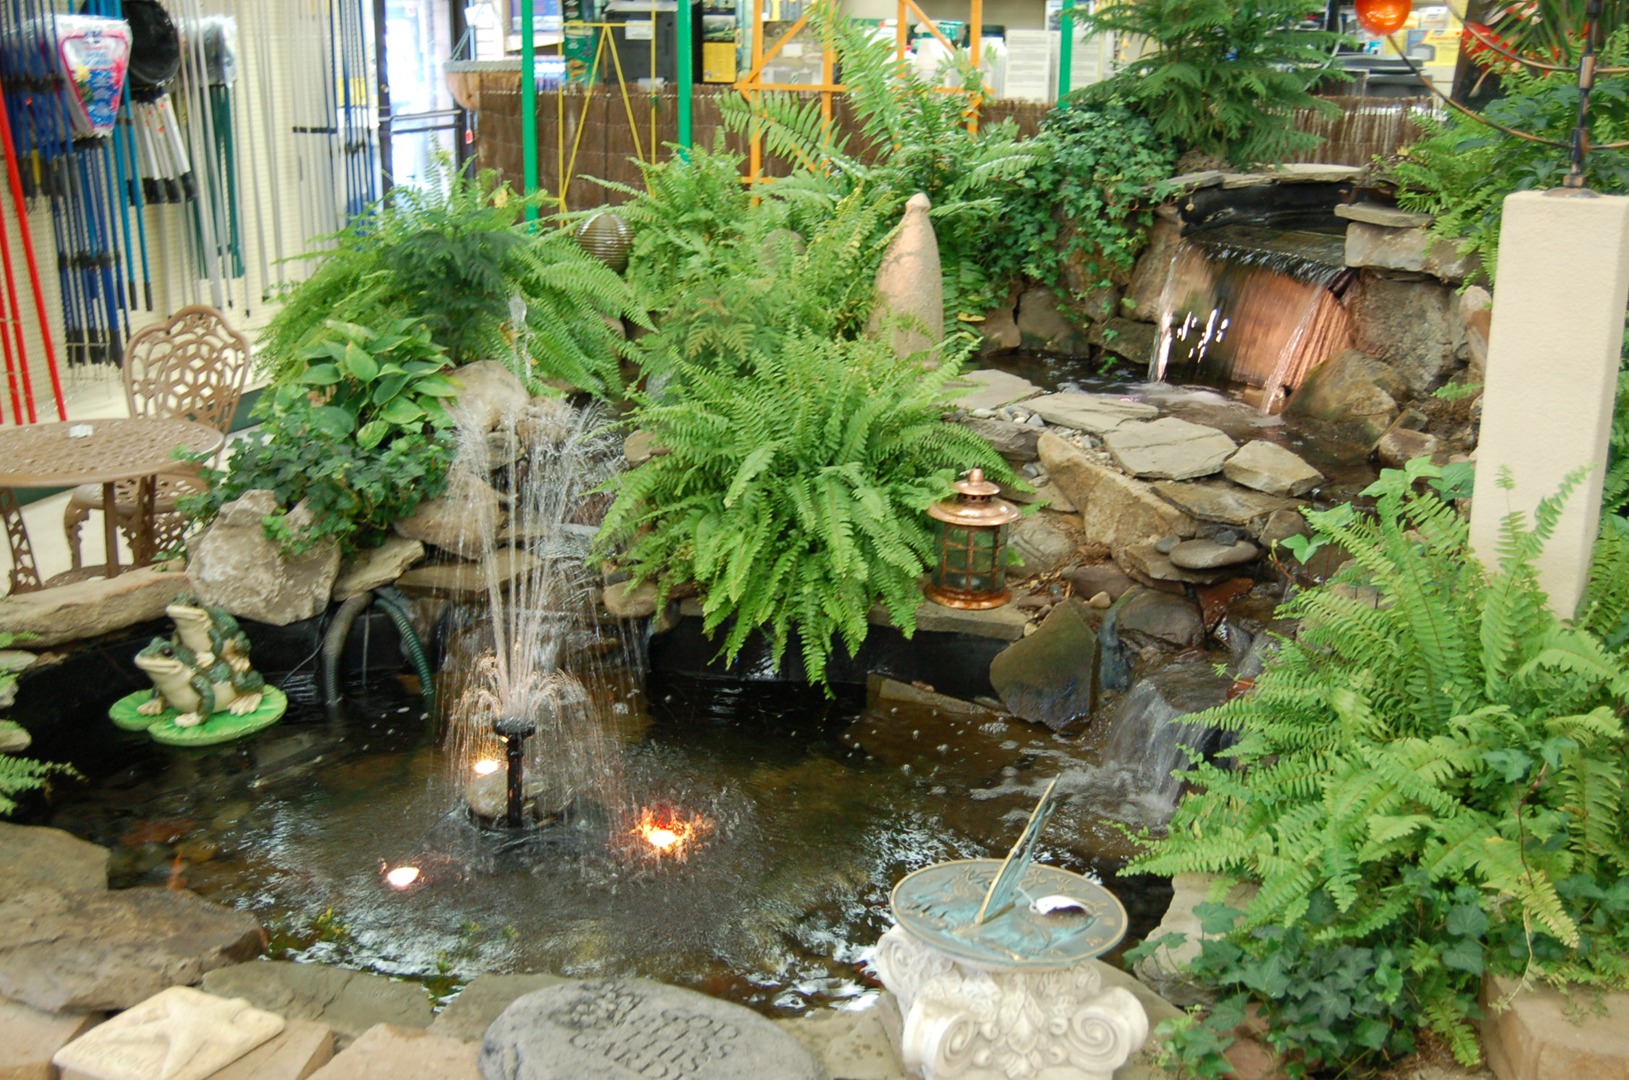 Water Gardening at Fairfield Garden Center